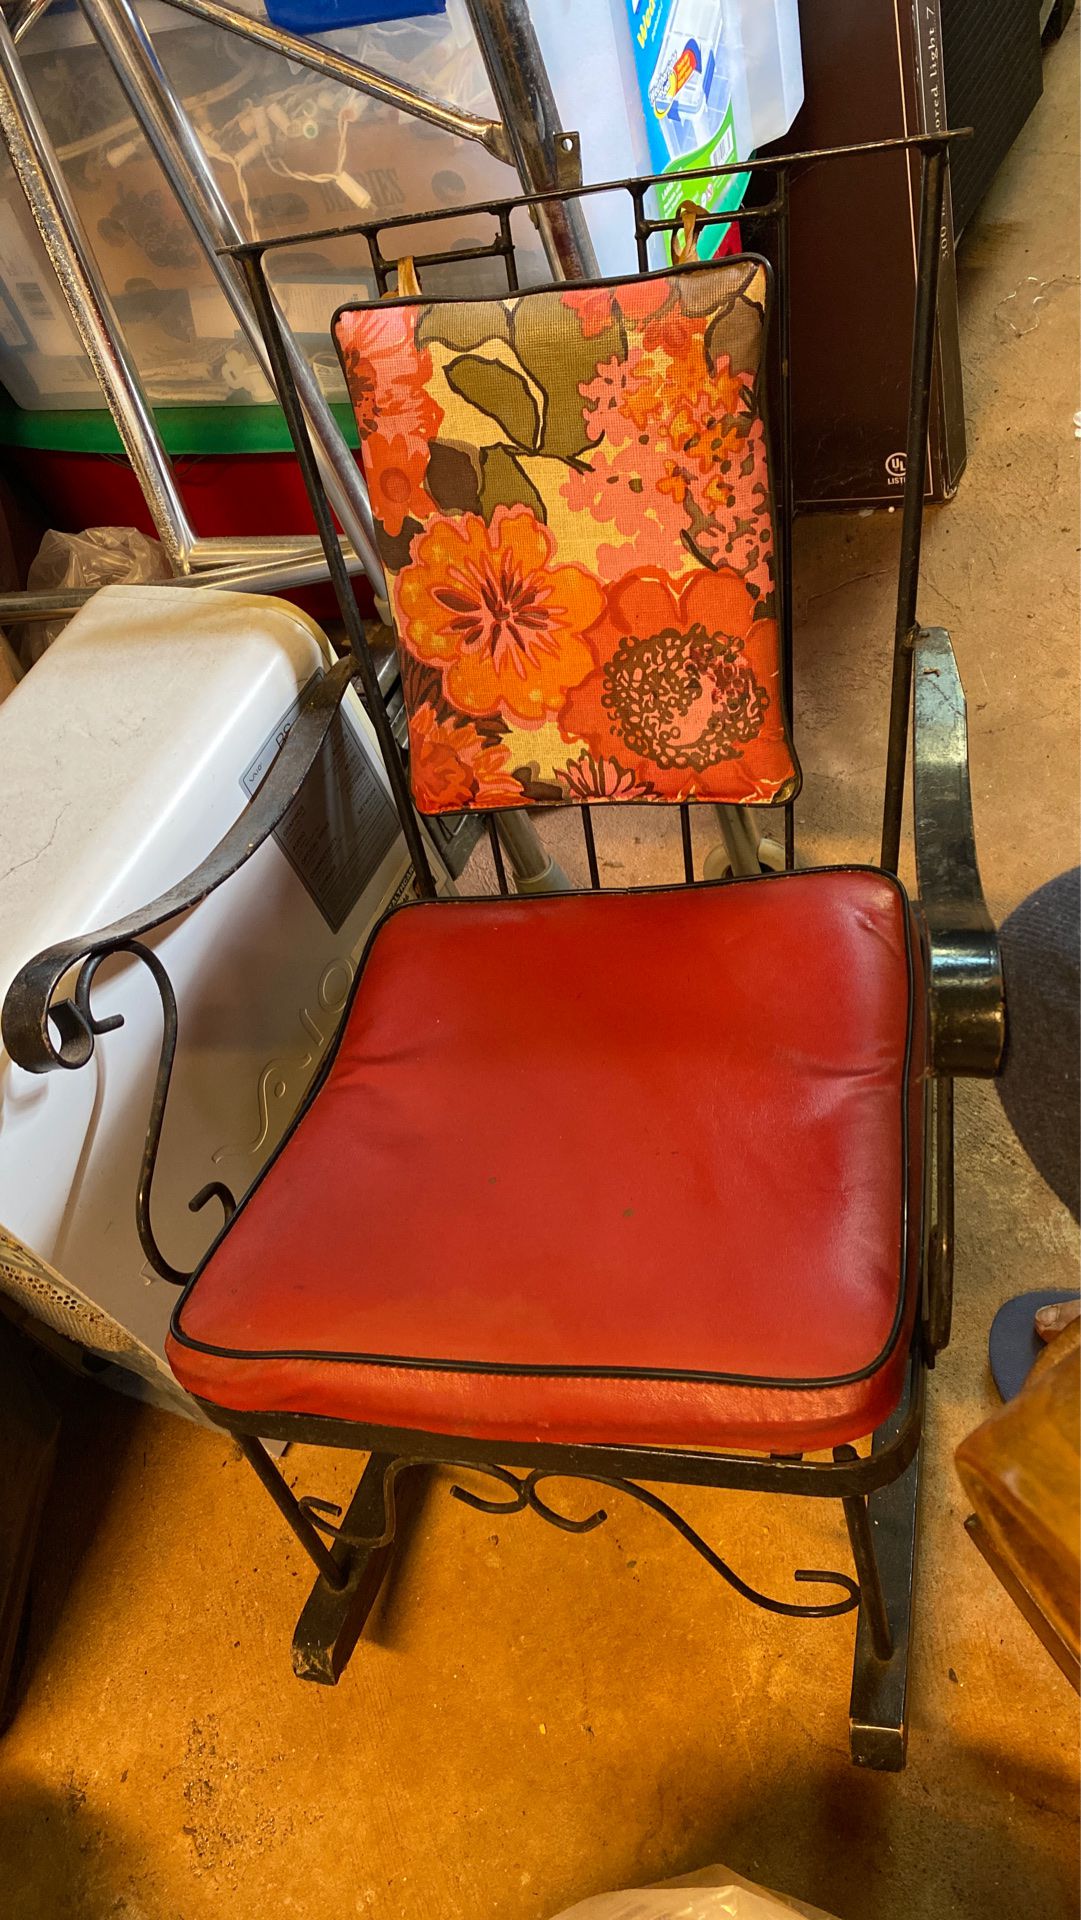 Antique iron child rocking chair.